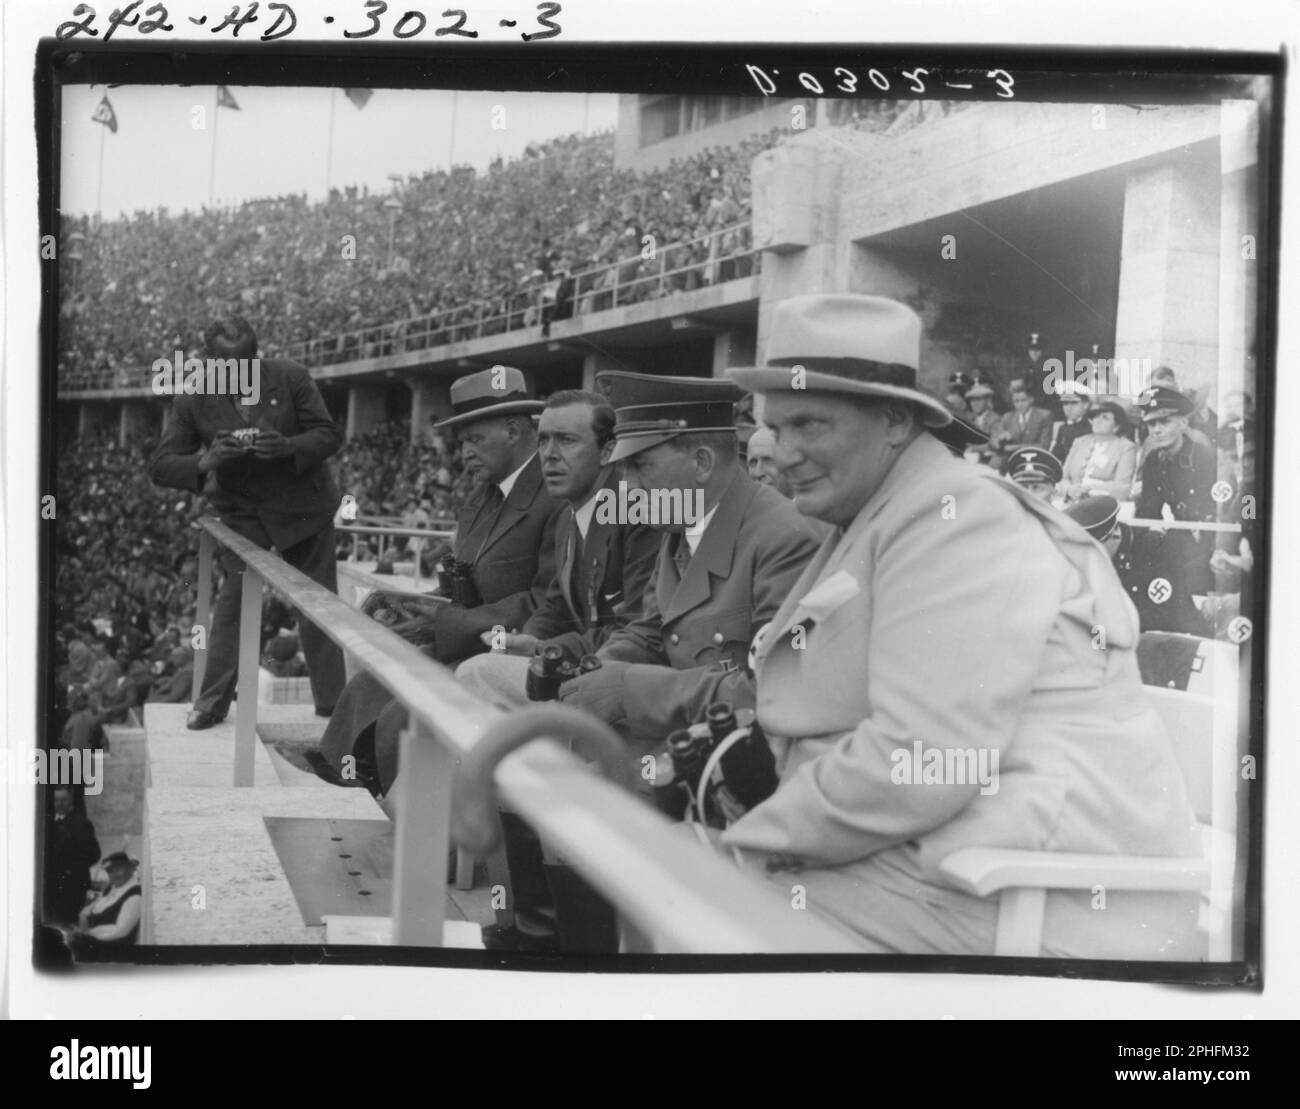 Ein unidentifizierter Fotograf (links stehend) macht ein Foto, während Adolf Hitler und andere Nazi-Funktionäre wie Herman Göring (ganz rechts) die Olympischen Spiele vom Stadion aus, Berlin, 8/1936, ansehen. (Foto von National Archives and Records Administration Stockfoto